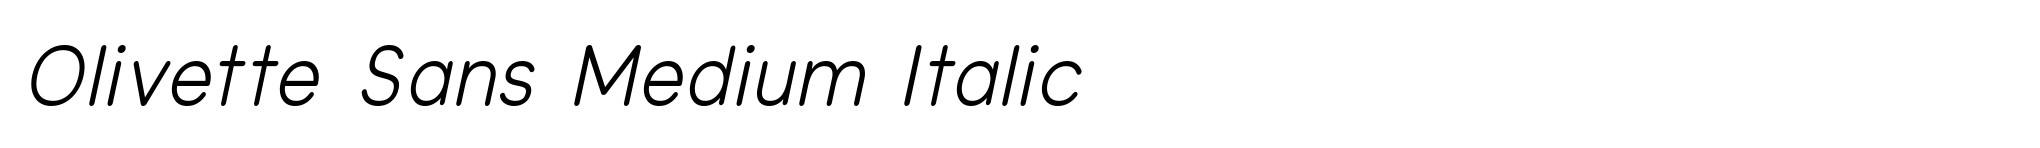 Olivette Sans Medium Italic image